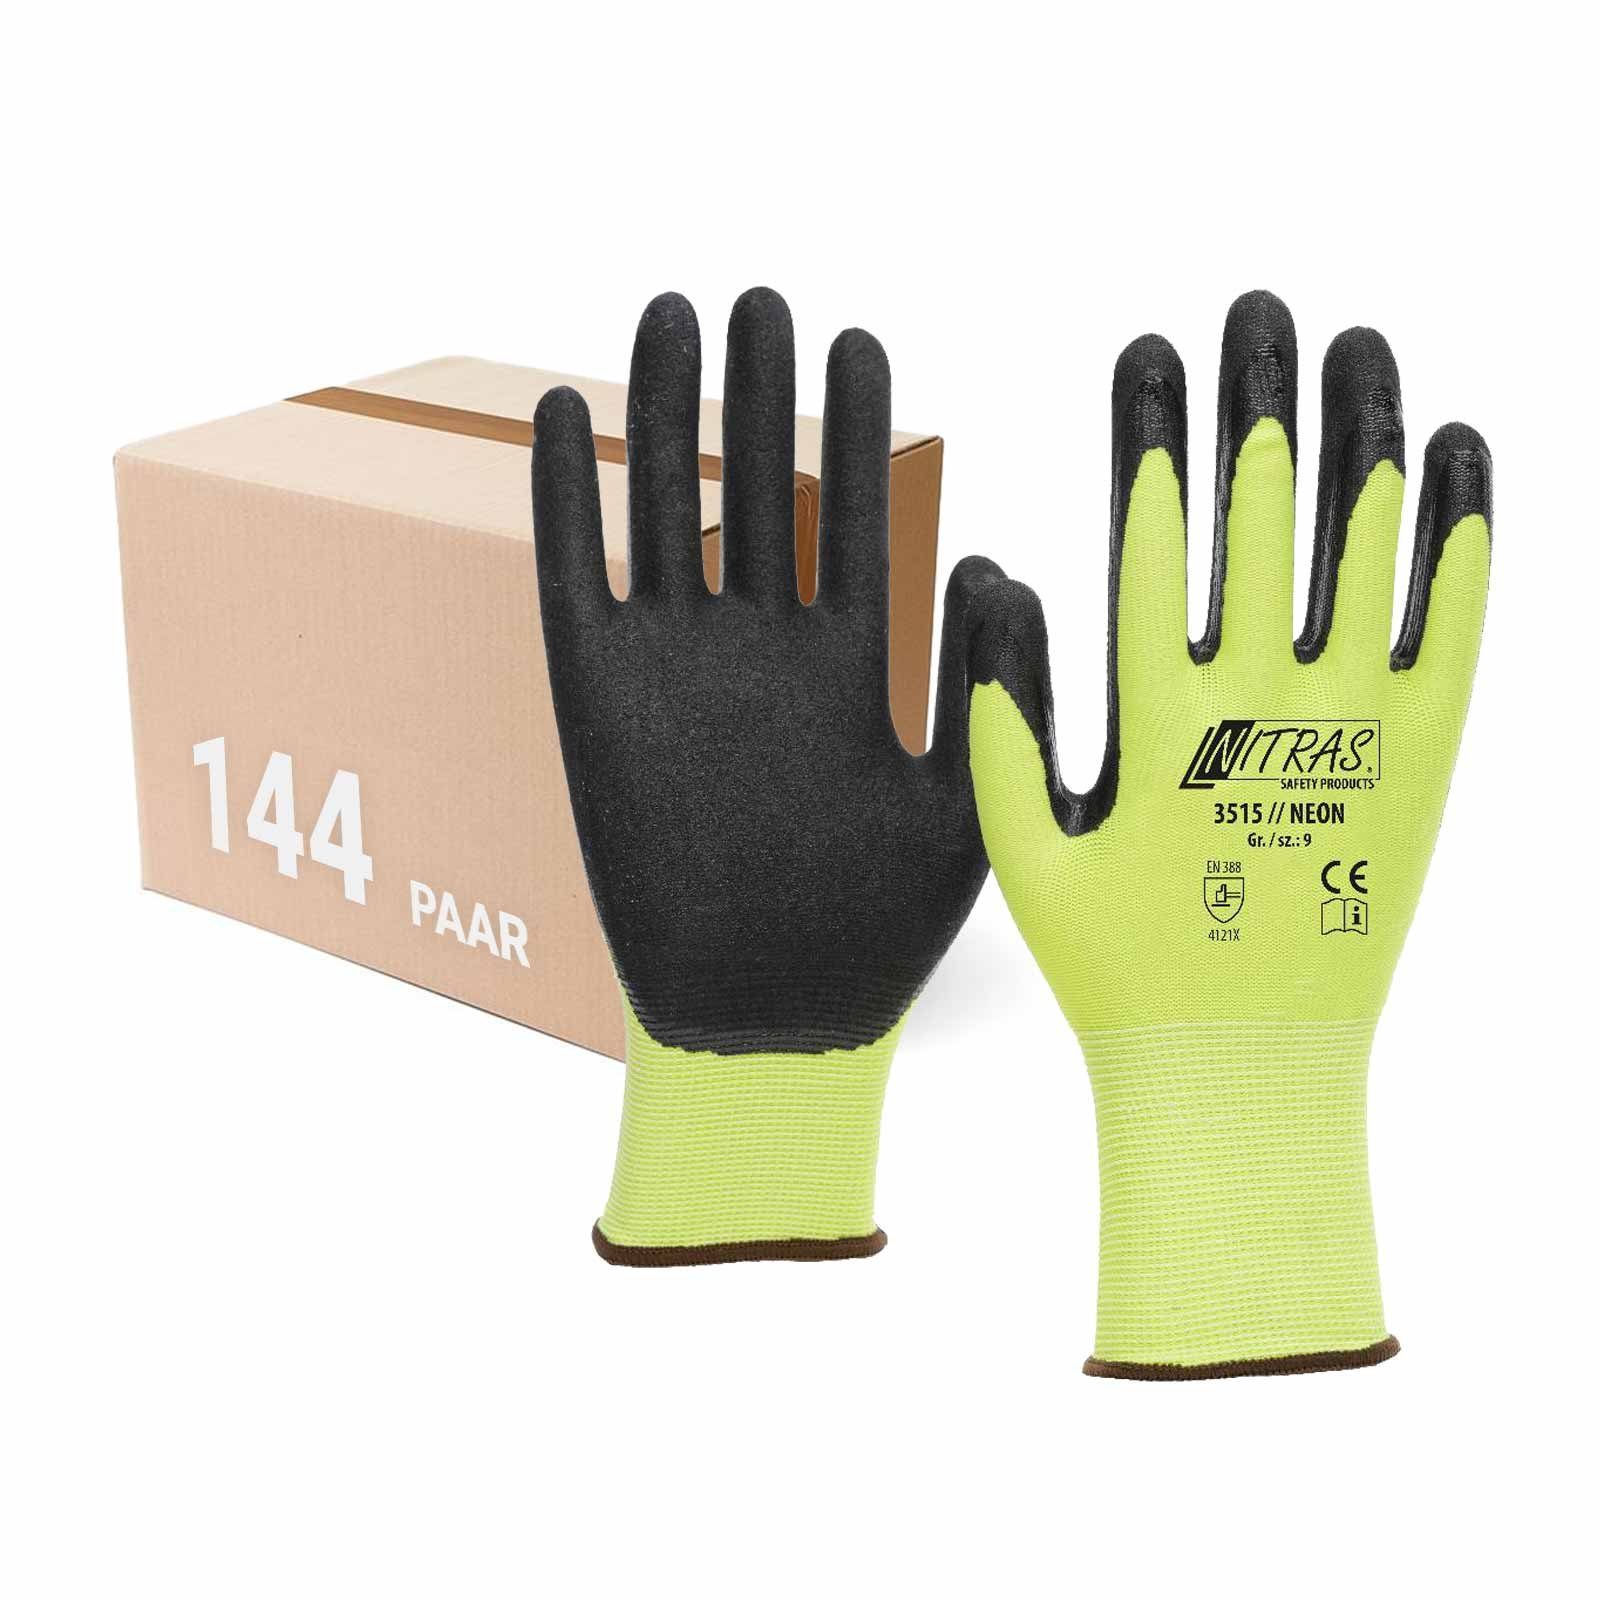 Nitras Nitrilbeschichtung Nitril-Handschuhe mit VPE Neon NITRAS - 144 (Spar-Set) Strickhandschuh Paar 3515